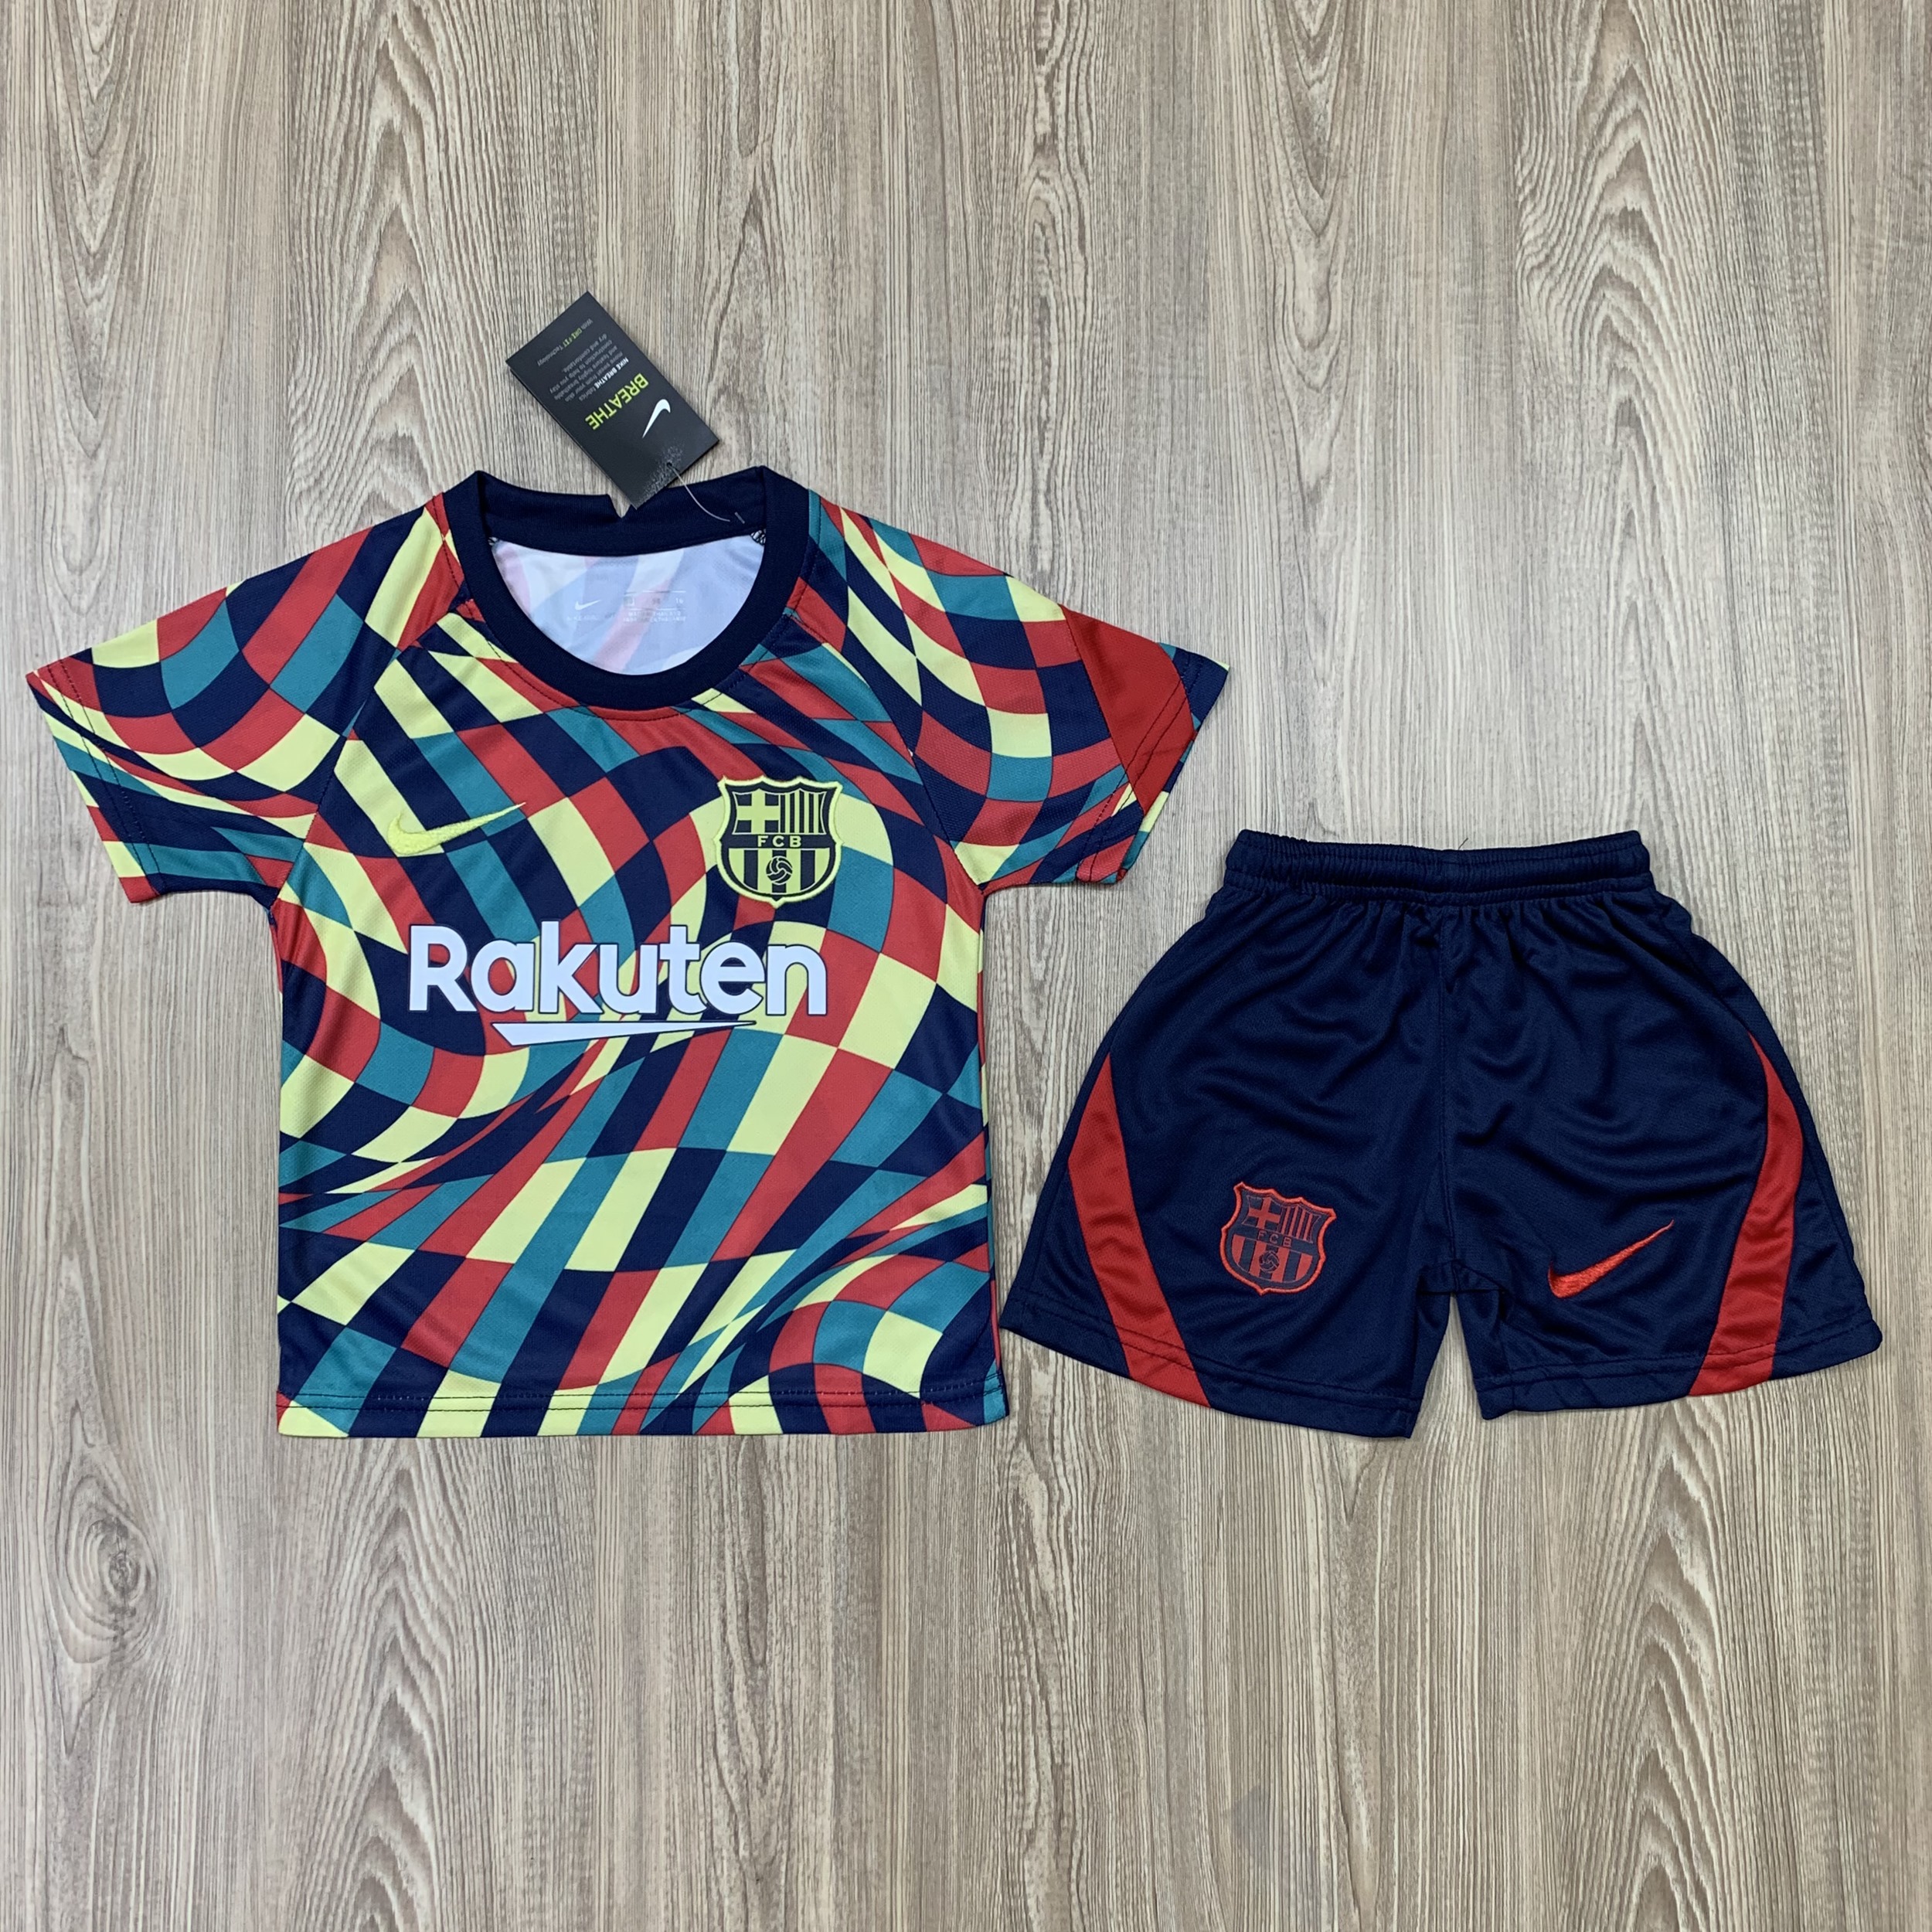 ชุดฟุตบอลเด็ก ชุดบอลเด็ก ชุดกีฬาเด็ก ชุดเด็ก เสื้อทีม Barcelona ซื้อครั้งเดียวได้ทั้งชุด (เสื้อ+กางเกง) ตัวเดียวในราคาส่ง สินค้าเกรด AAA